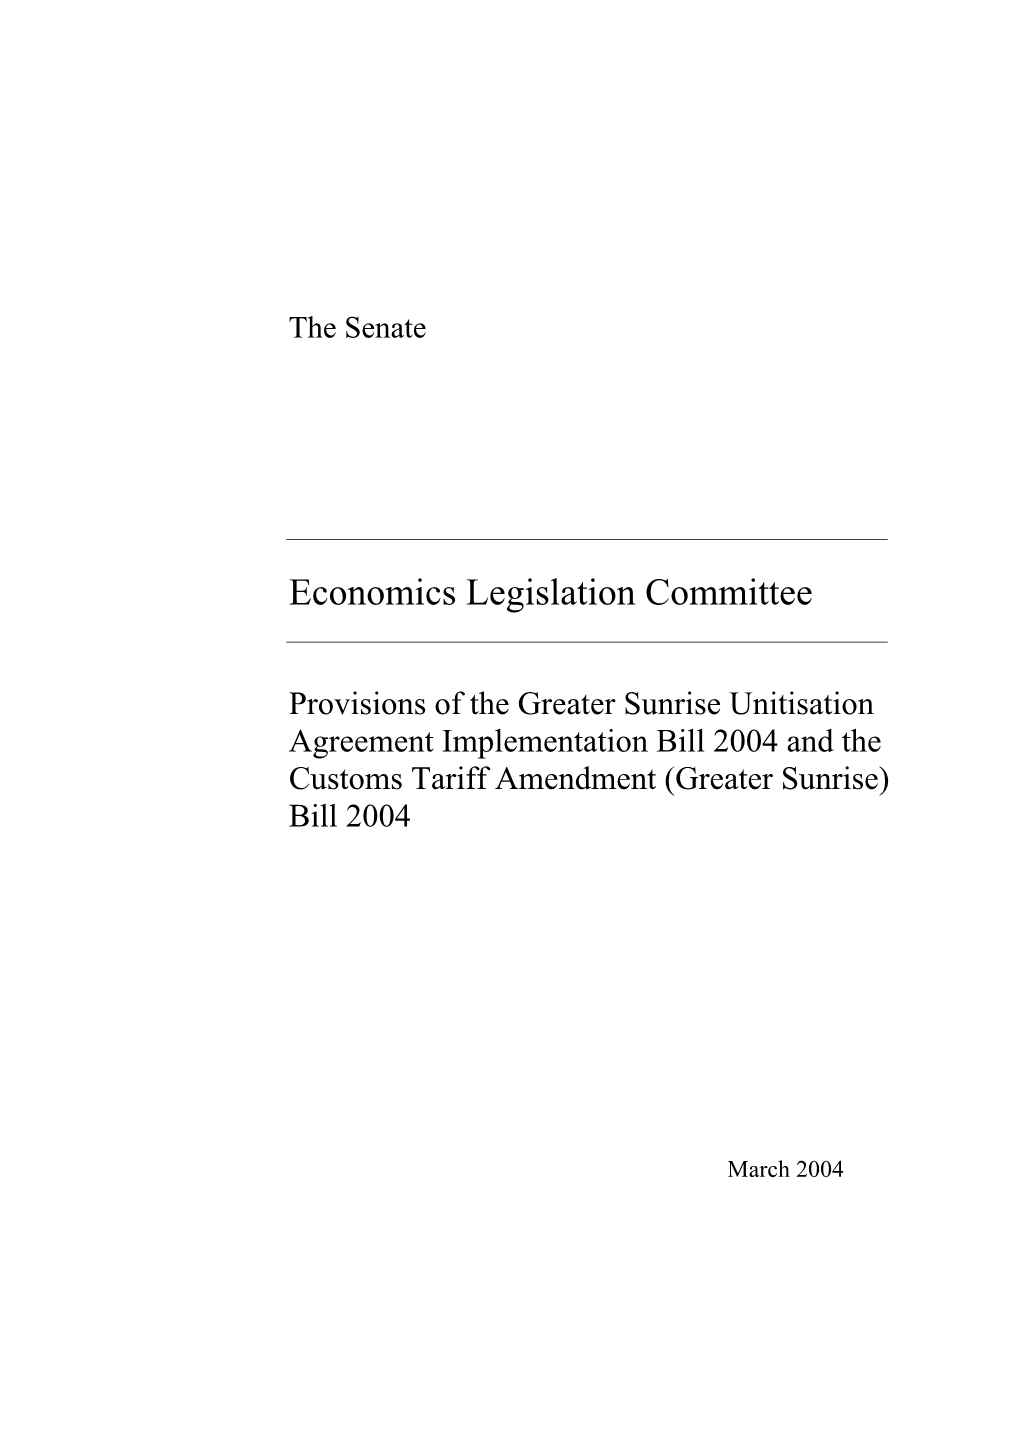 Economics Legislation Committee